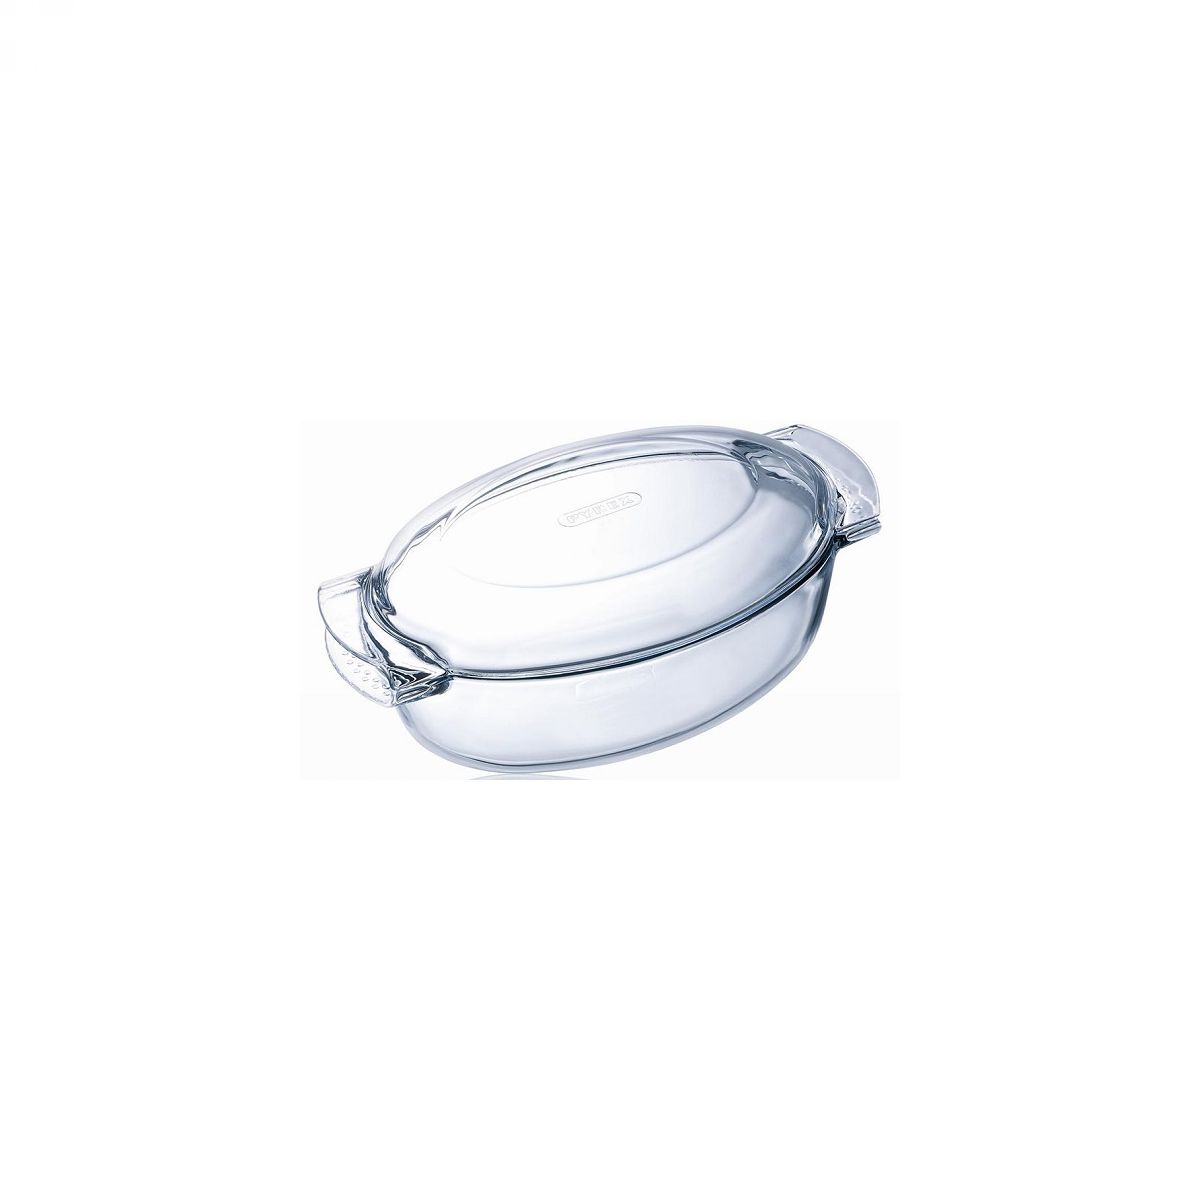 Pyrex ovalni pekač s pokrovom, 4,5L, iz borosilikatnega (kaljenega) stekla